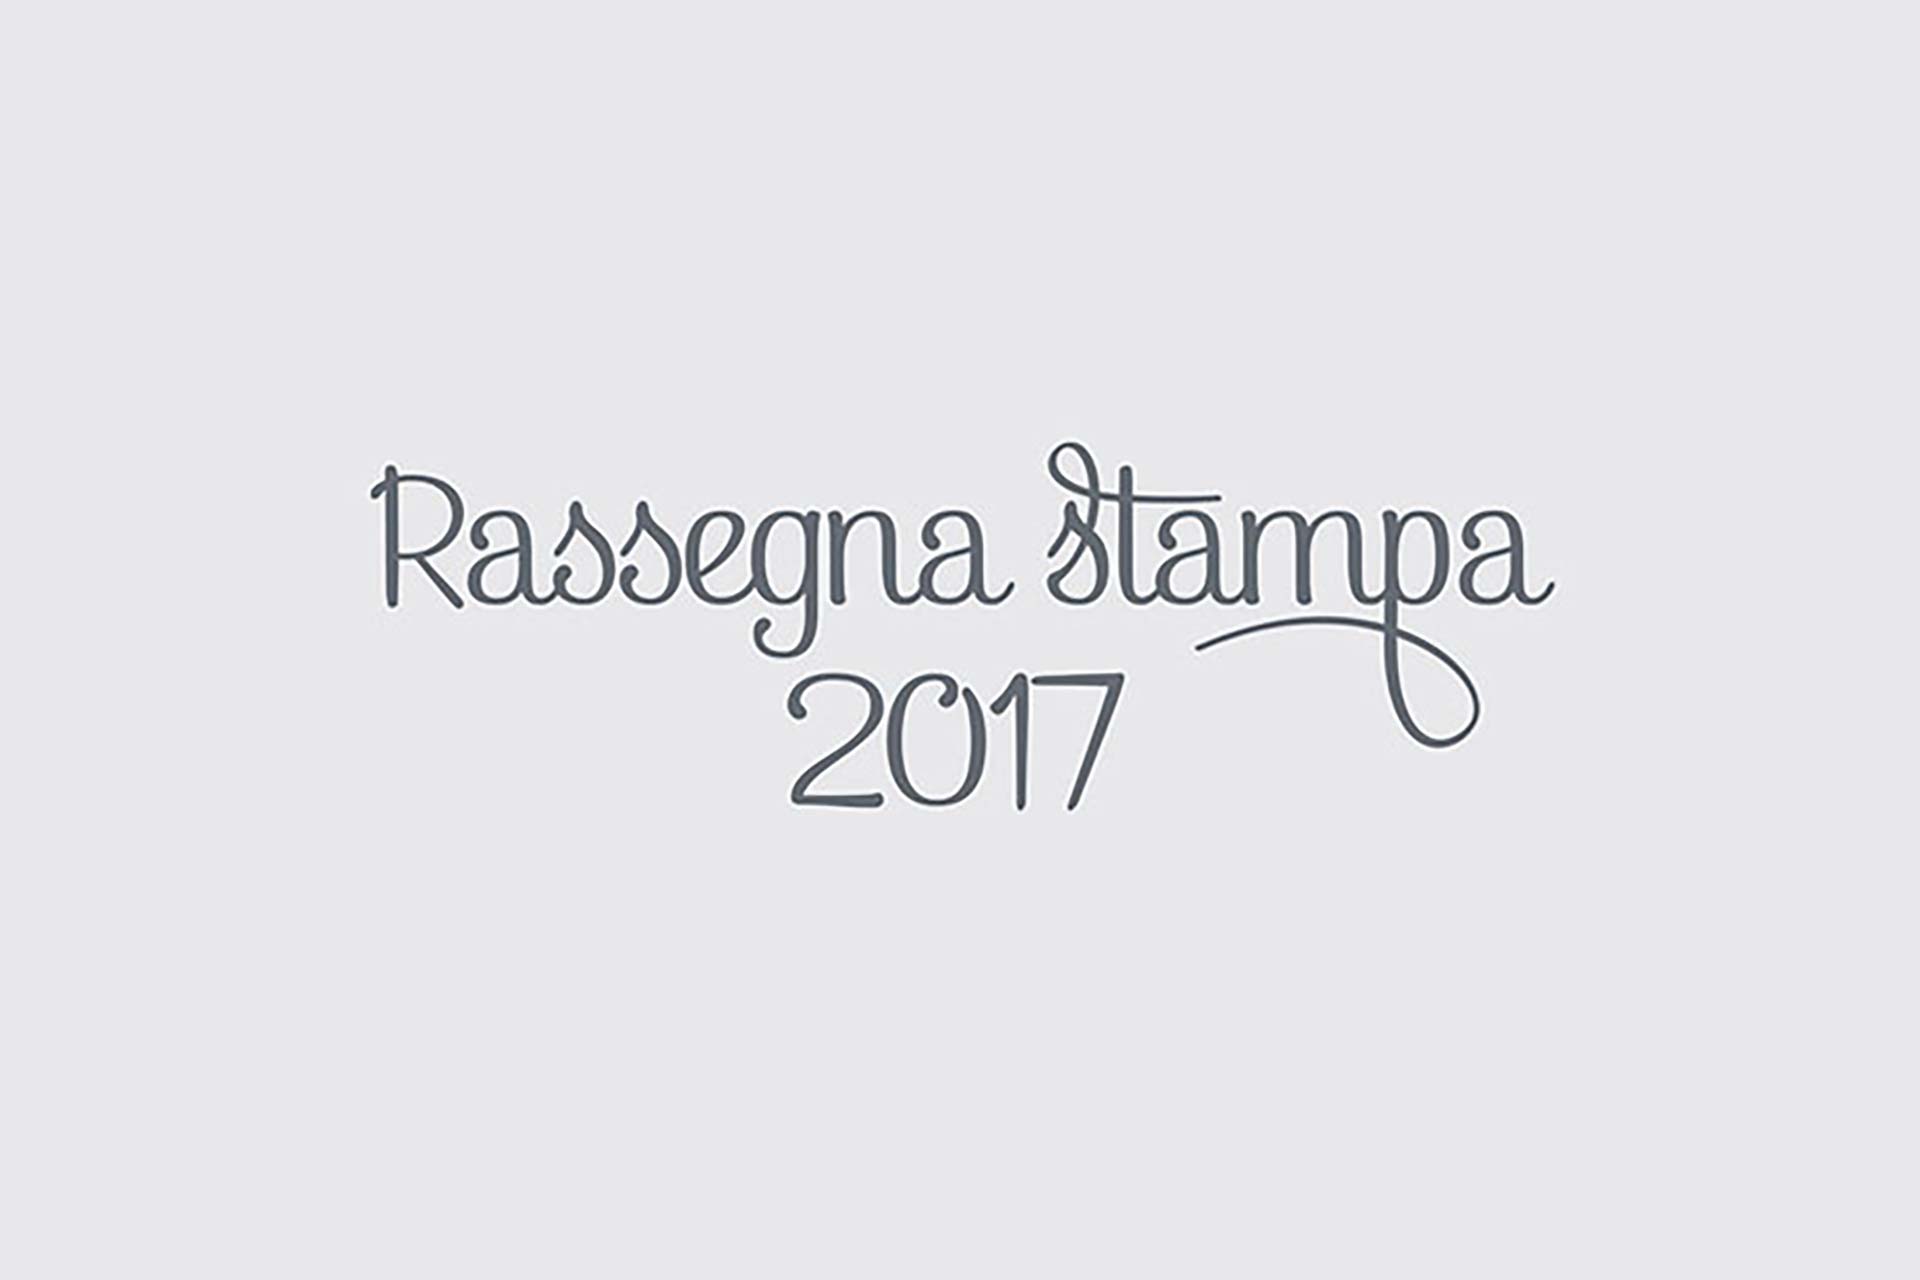 Rassegna Stampa 2017 - Ristorante Almare